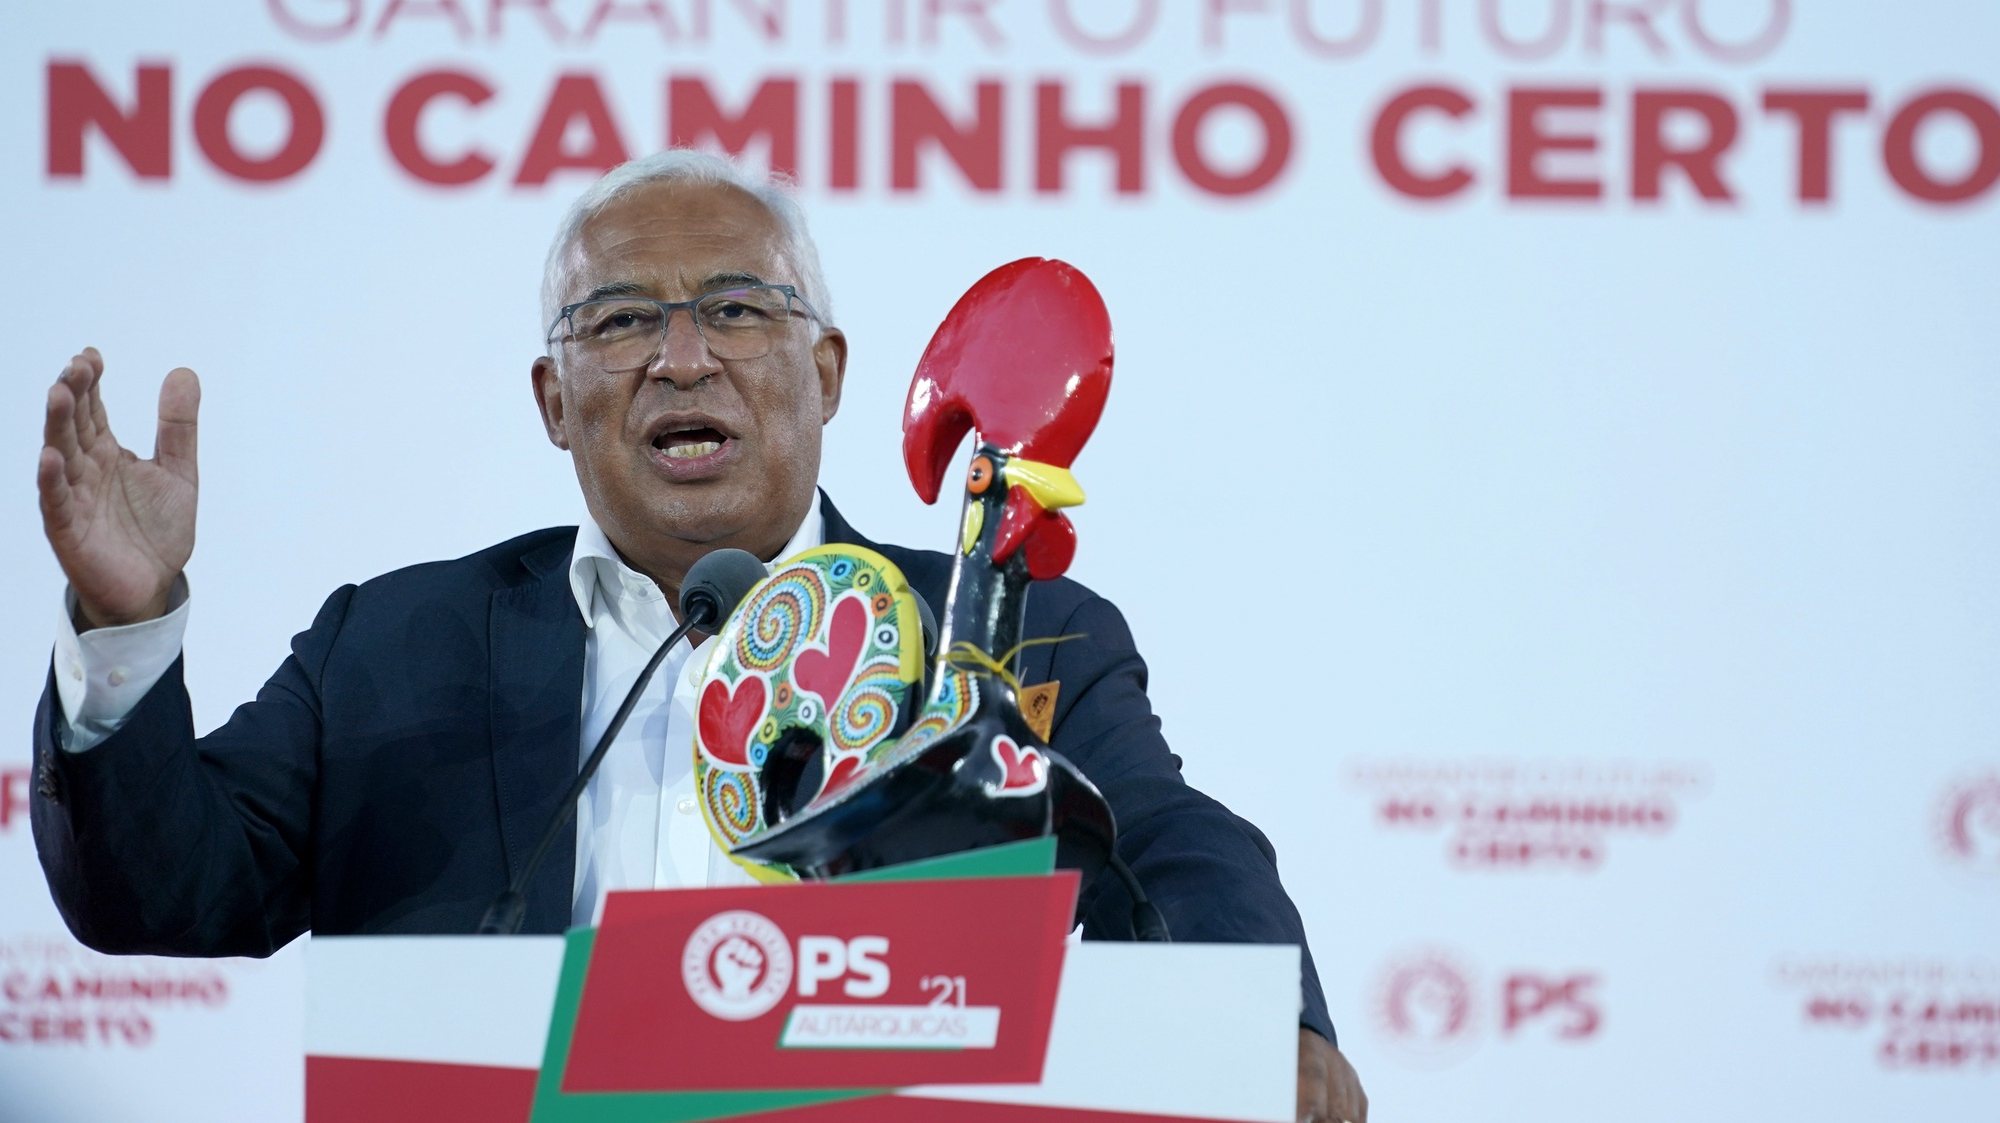 O secretario-geral do Partido Socialista (PS), António Costa, discursa durante um comício em Barcelos, 18 de setembro de 2021. No próximo dia 26 de setembro mais de 9,3 milhões eleitores podem votar nas eleições autárquicas para eleger os seus representantes locais. HUGO DELGADO/LUSA